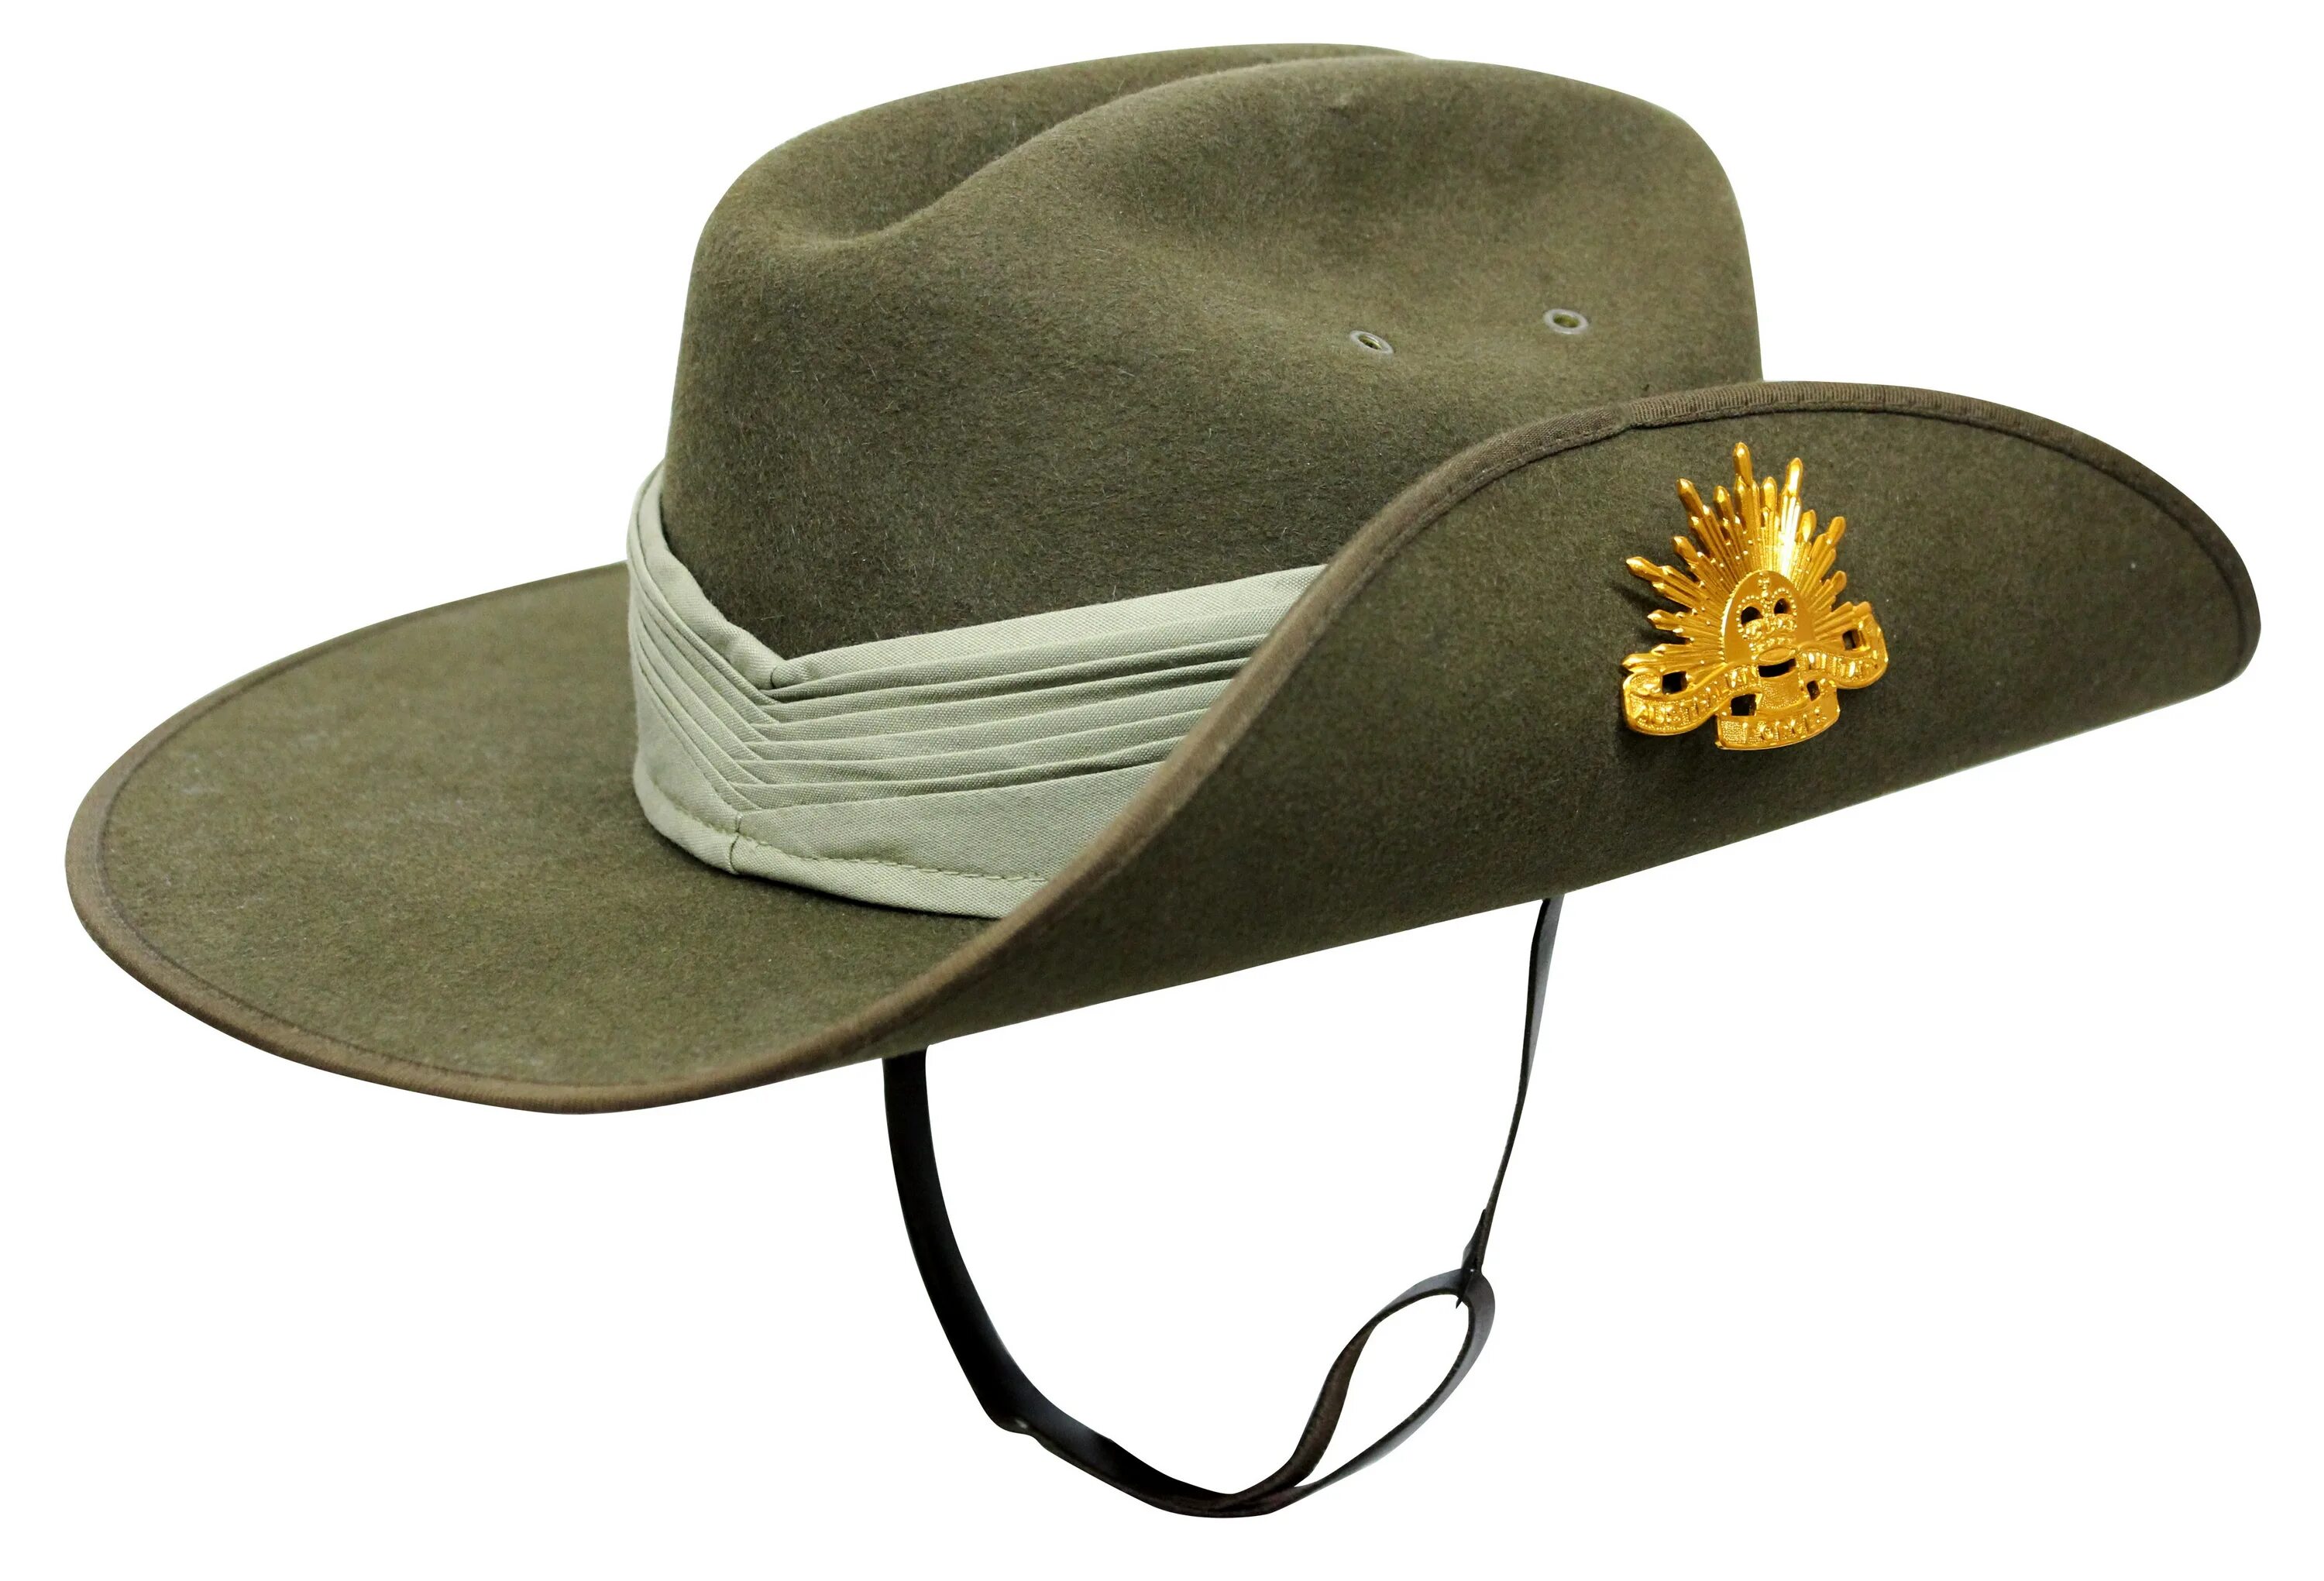 Австралийская шляпа Анзак. Шляпа Слауч (Slouch). Australian Army Wool felt Slouch hat. Акубра шляпа Австралия. Шляпа войны